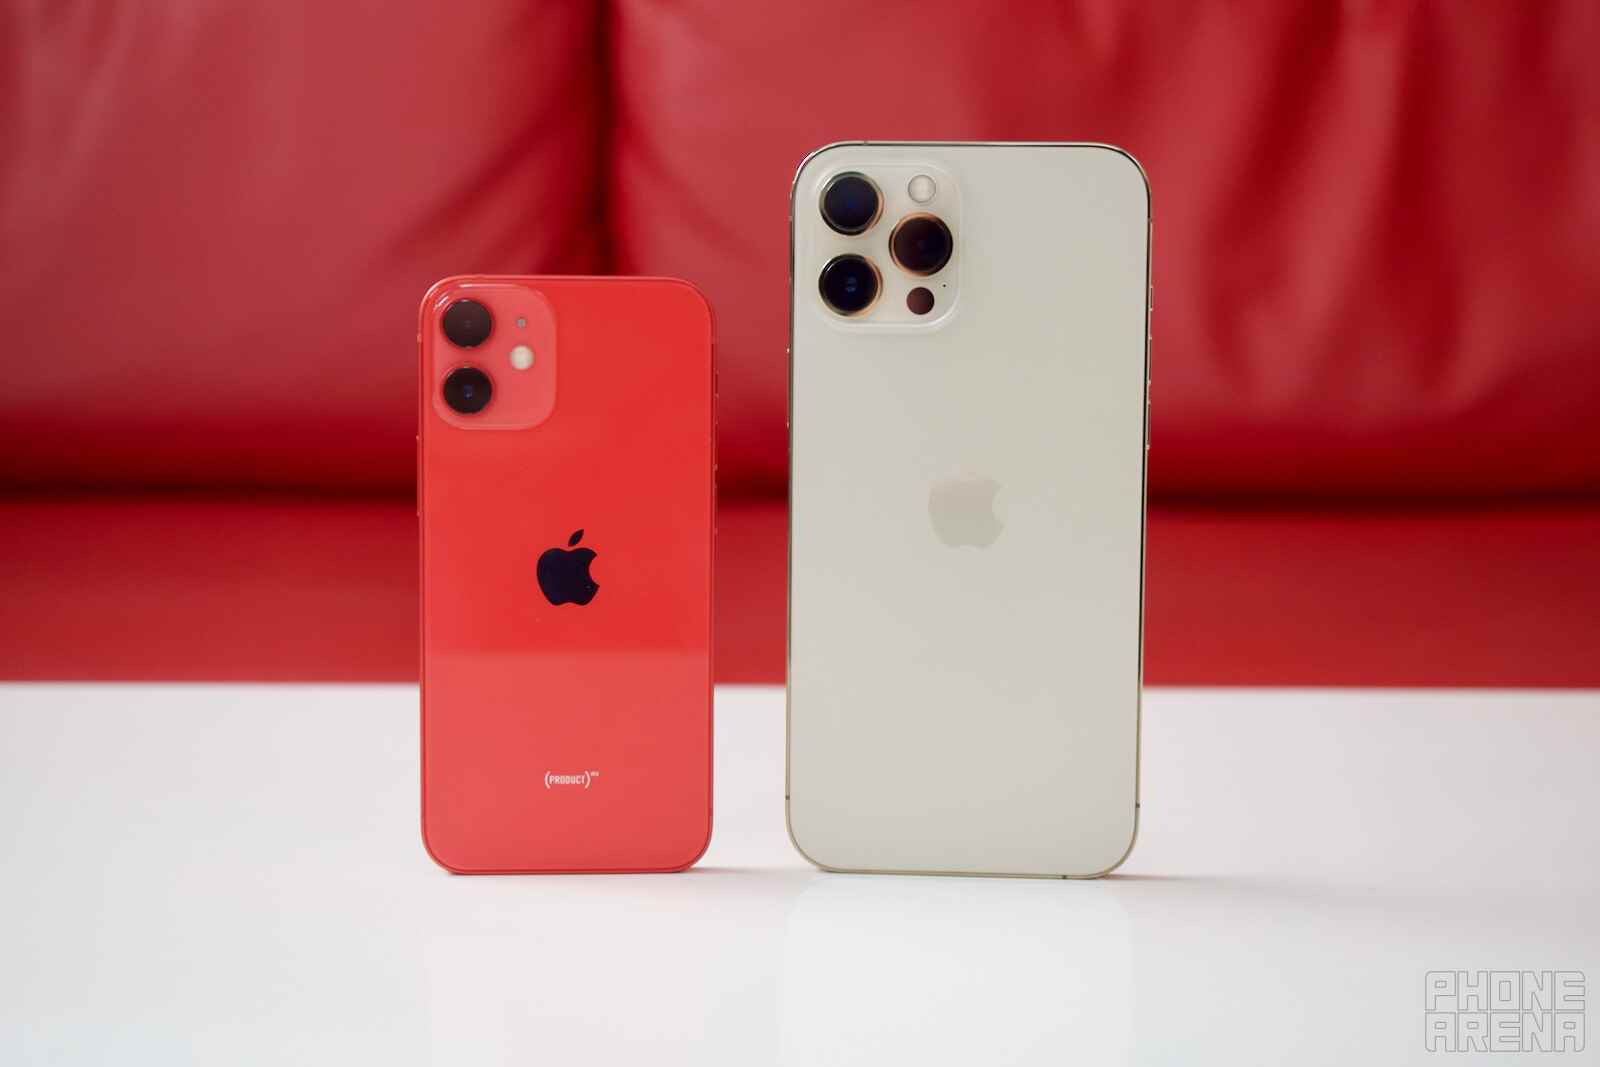 Sol - iPhone 12 mini;  Sağ - iPhone 12 Pro Max - Tahmin: iPhone mini ölmedi küllerinden yeniden doğacak